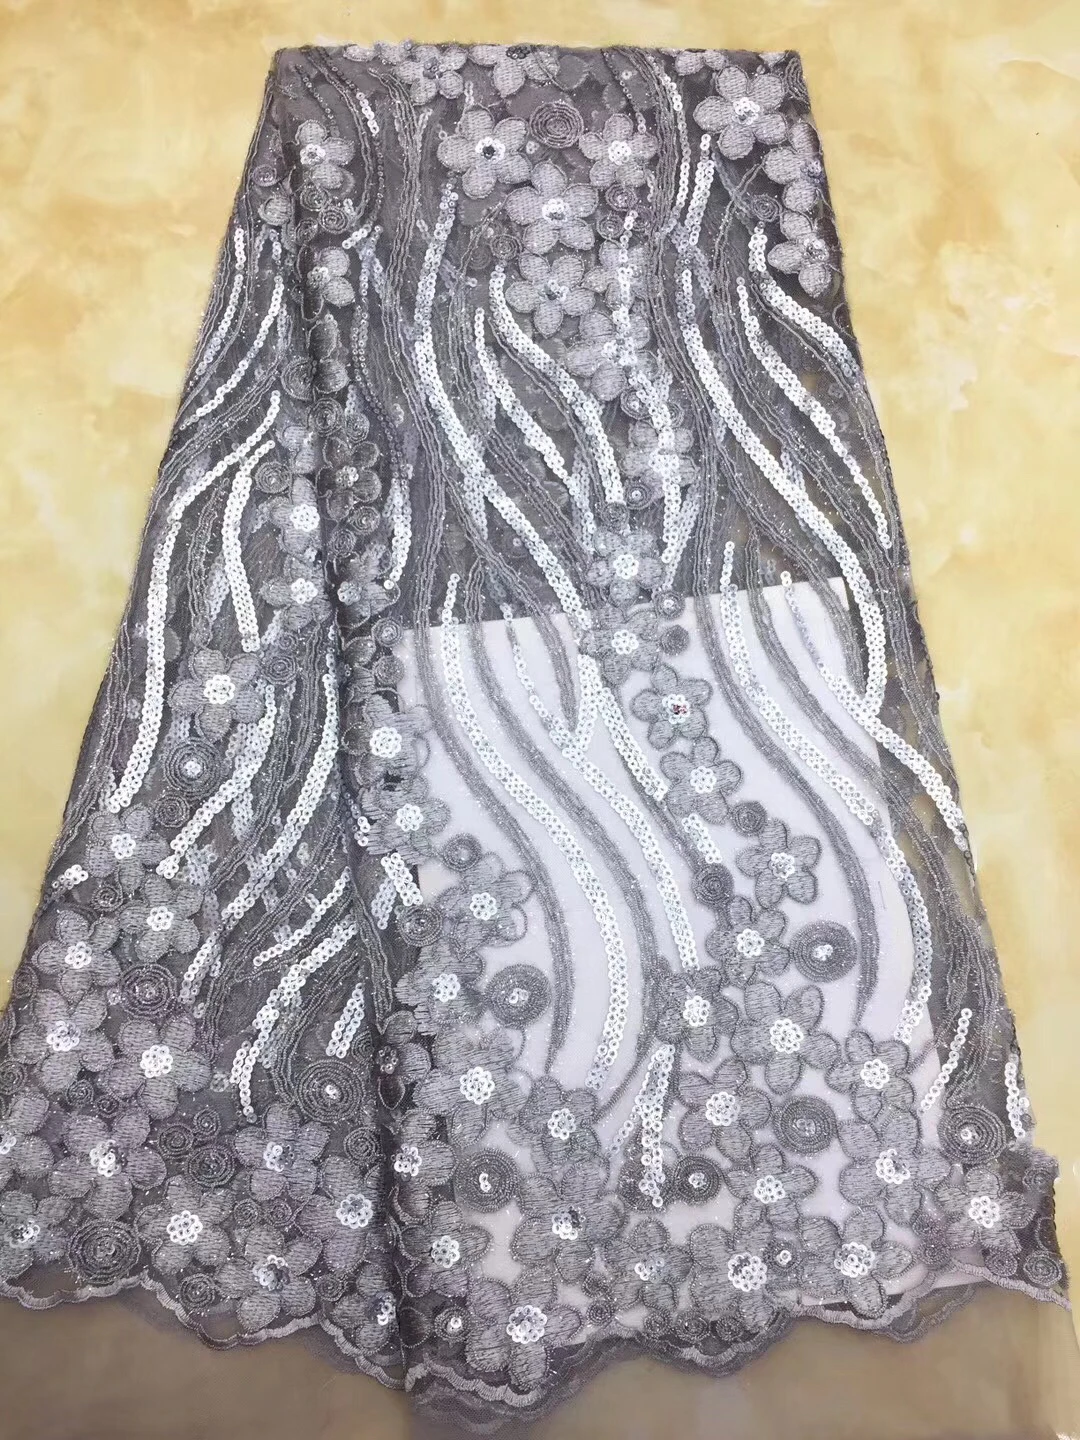 

Нигерийские кружевные ткани высокого качества, Африканское кружево, французская решетка, фототкань для свадебного платья CD67